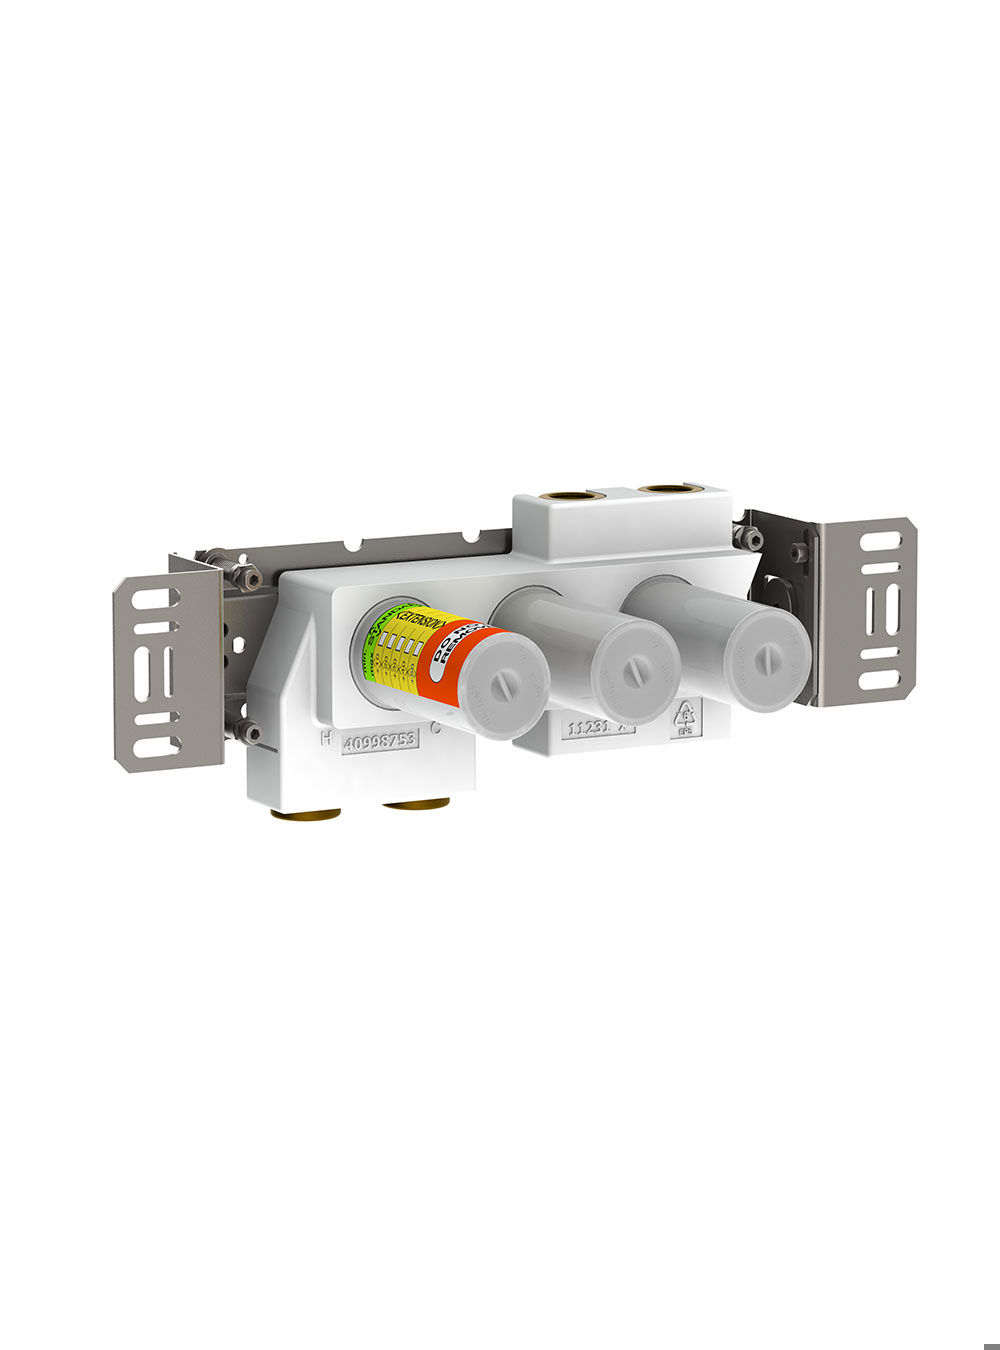 5400VA4: 4-vägs termostatblandare.¾" anslutning för CU-, stål- eller pexrör. 